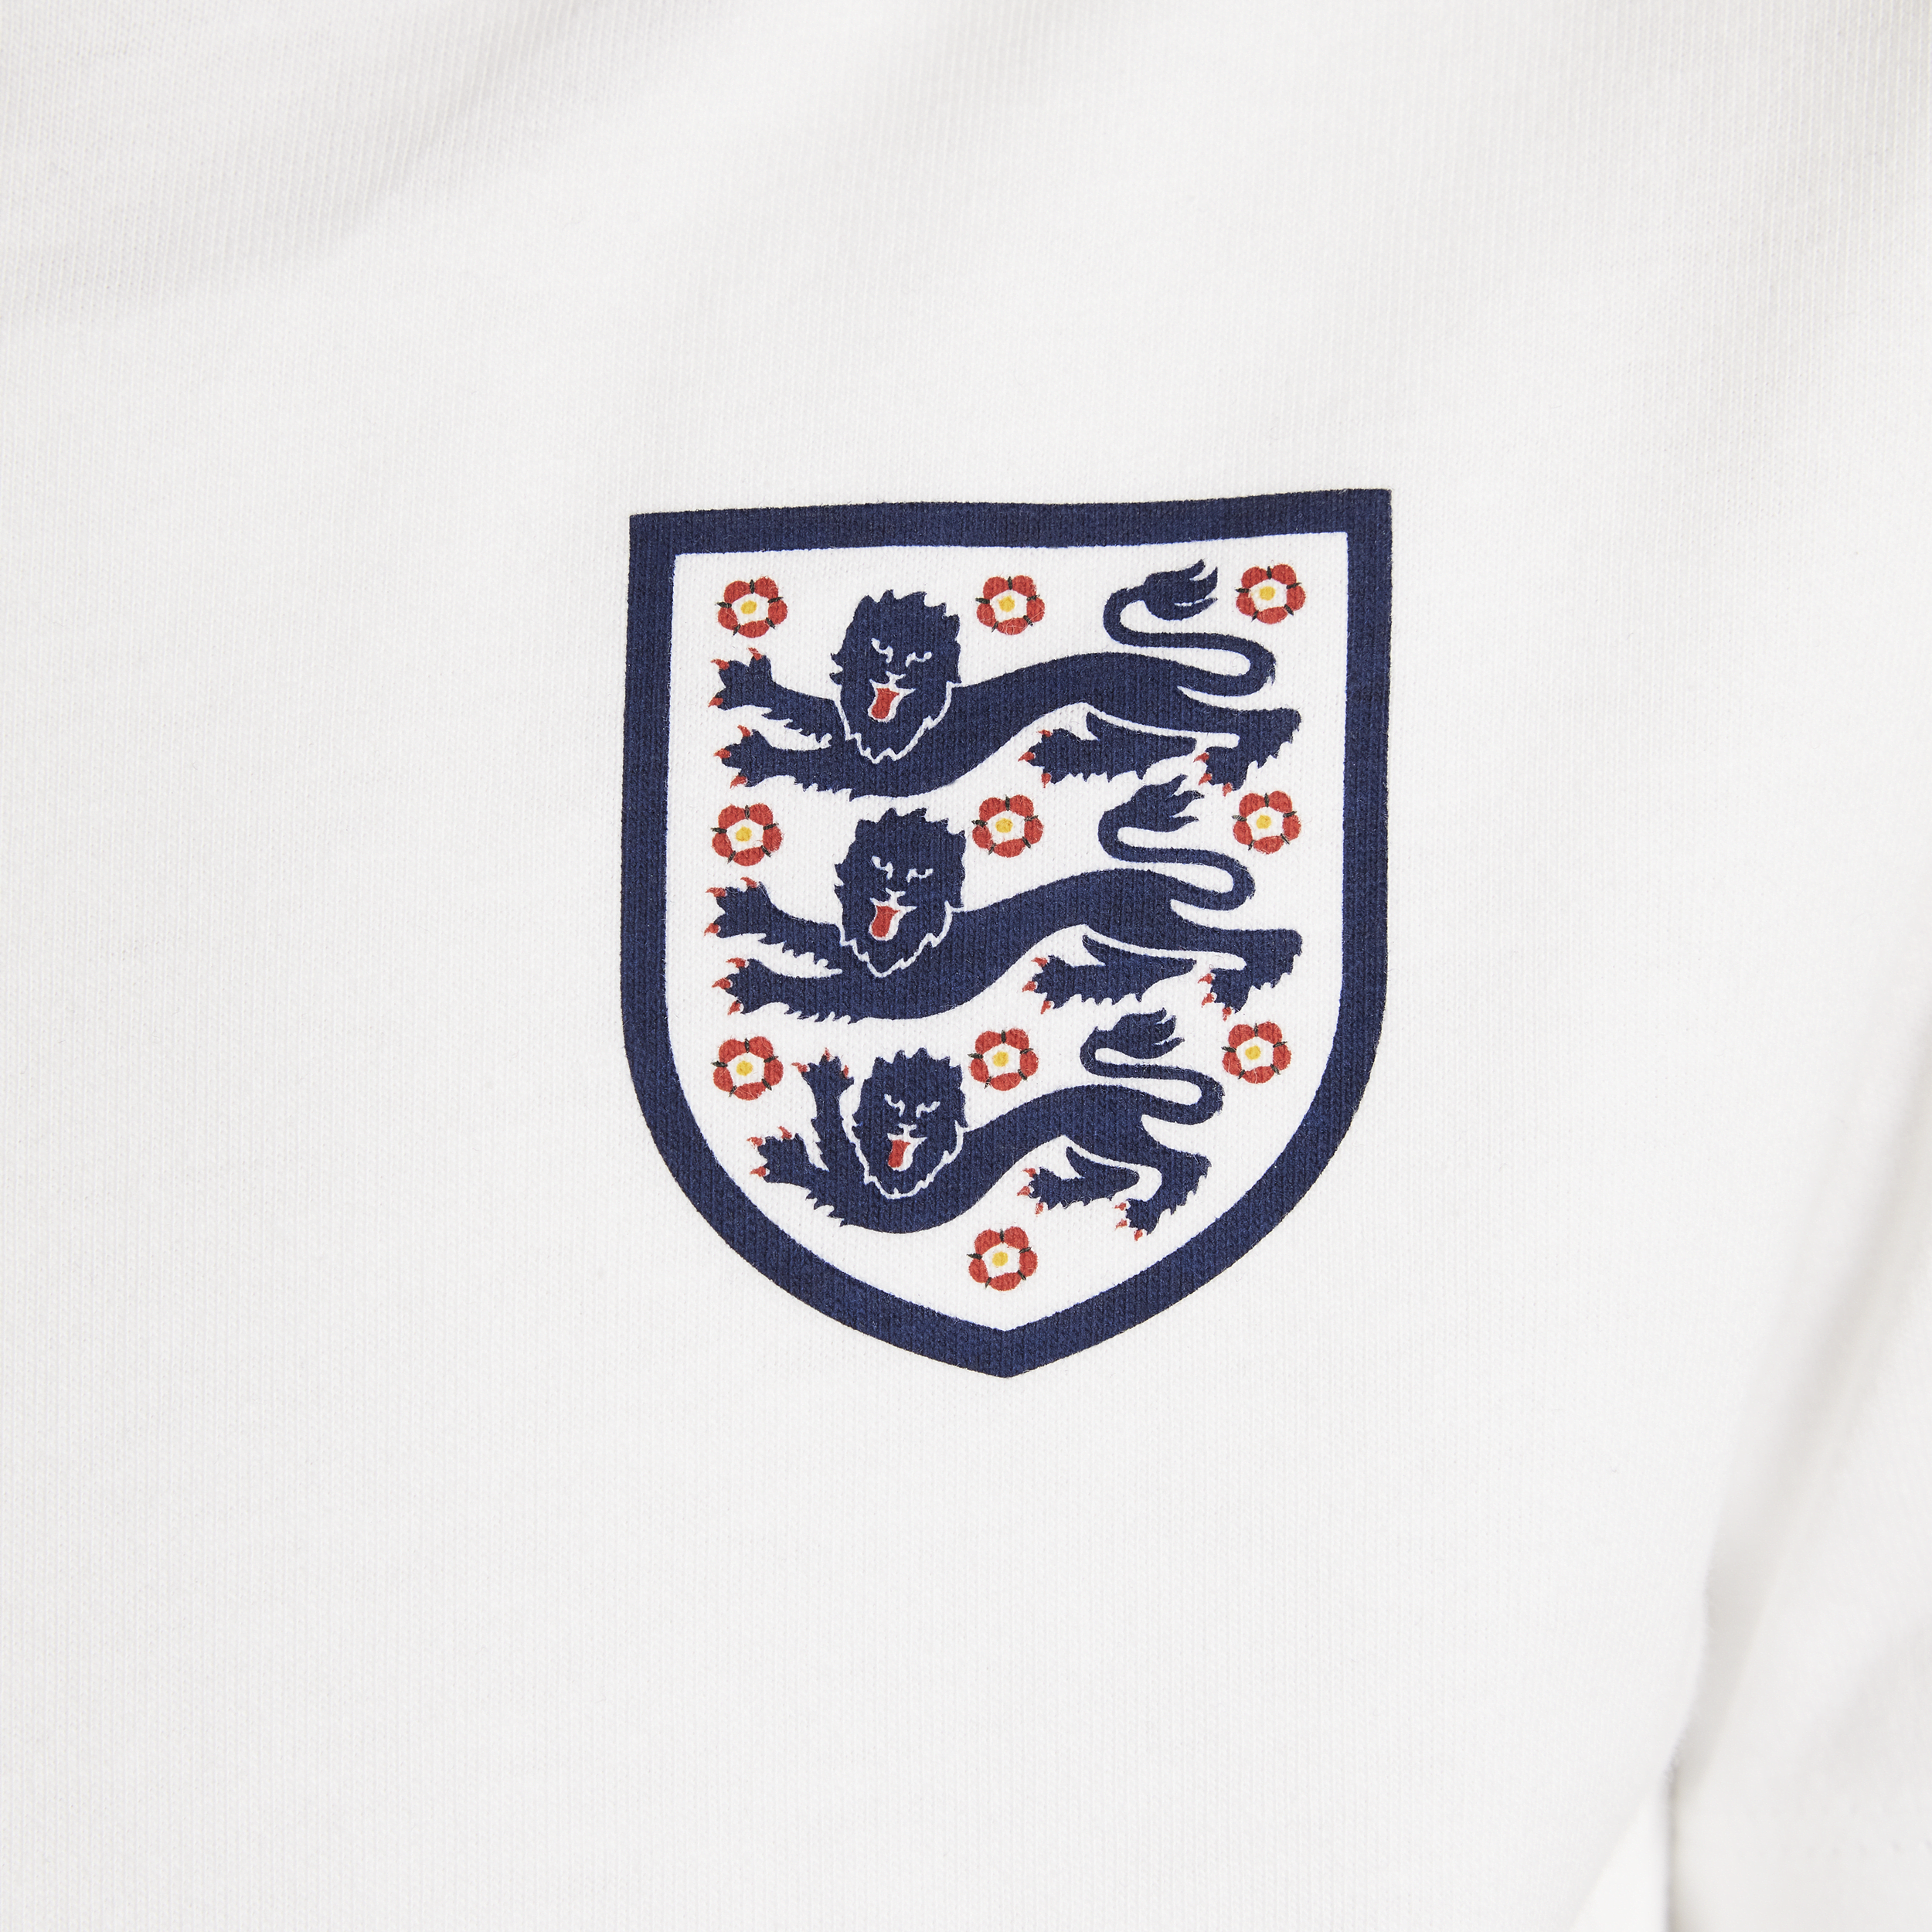 Nike Engeland voetbalshirt voor kids Wit